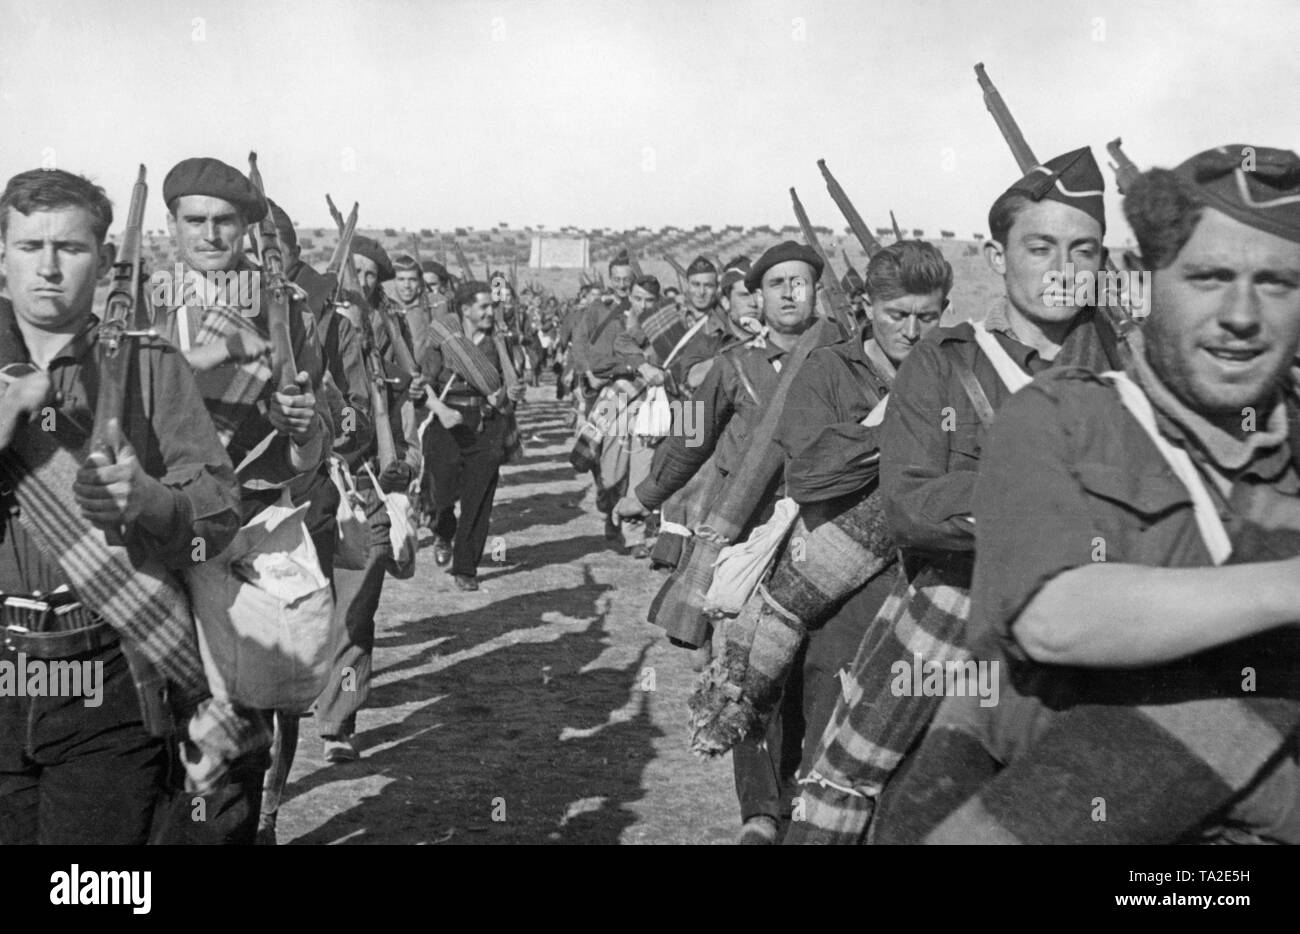 Foto von Freiwilligen der Falangisten während einer Übung im Spanischen Bürgerkrieg von 1937. Die Soldaten tragen die blauen Shirts der faschistischen Partei Spaniens, Falange Espanola. Sie sind mit Karabiner bewaffnet und Feld Pack durchzuführen. Stockfoto